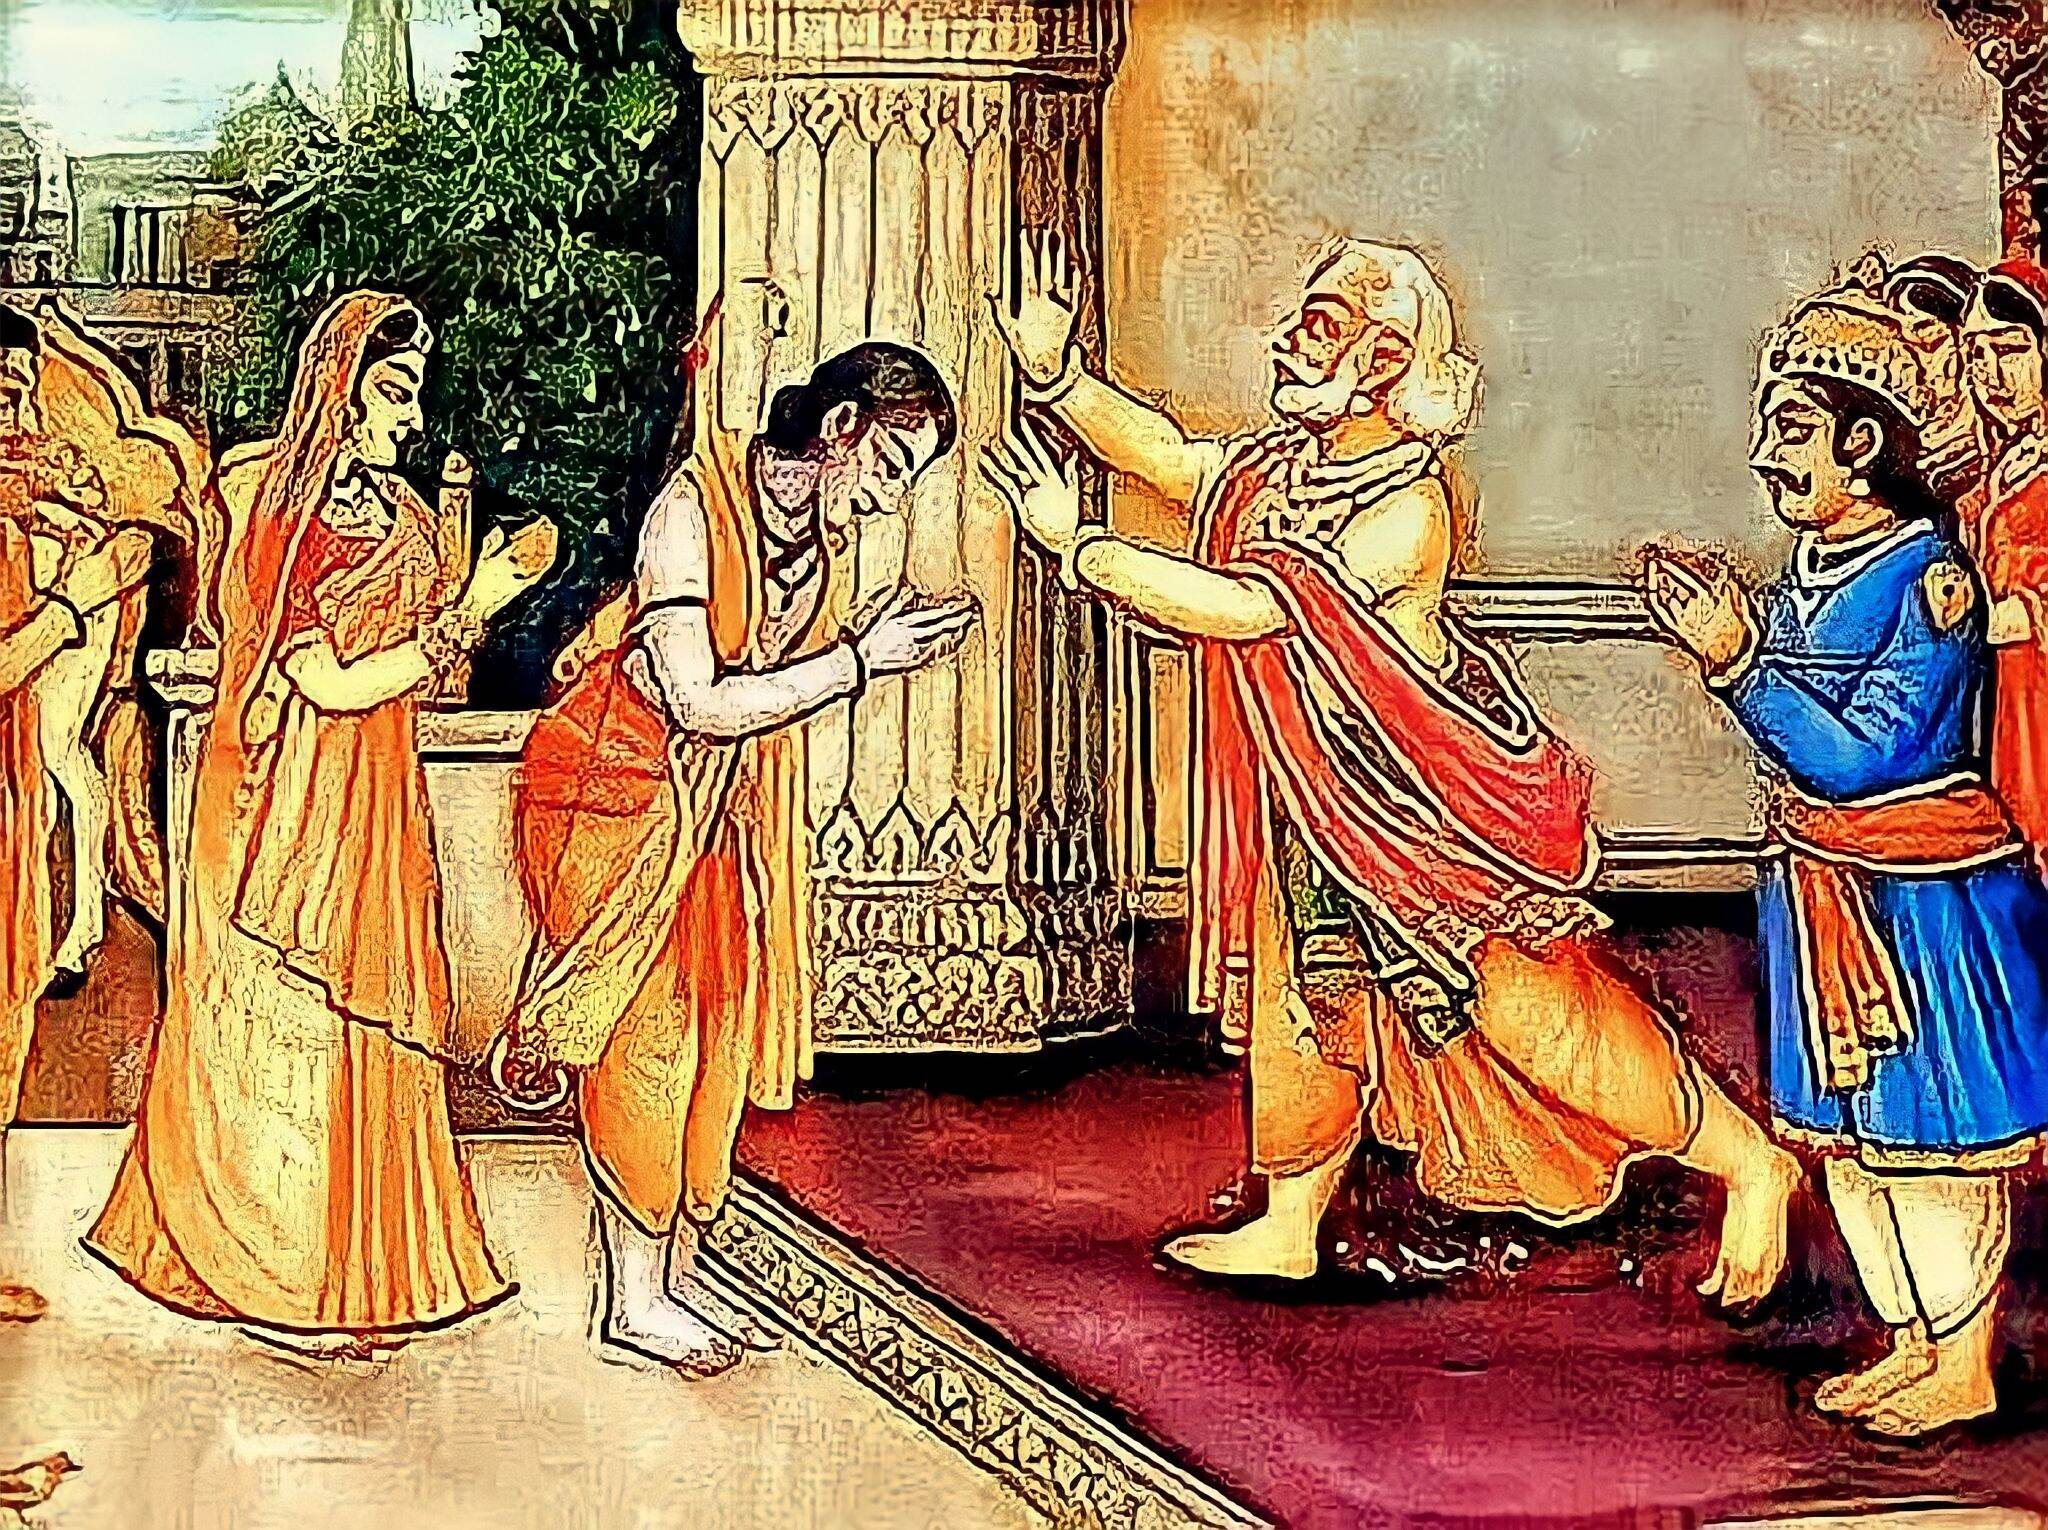 राजा दशरथ श्रीराम को वन नहीं भेजना चाहते थे, फिर भी क्यों विवश हुए कैकेयी के सामने